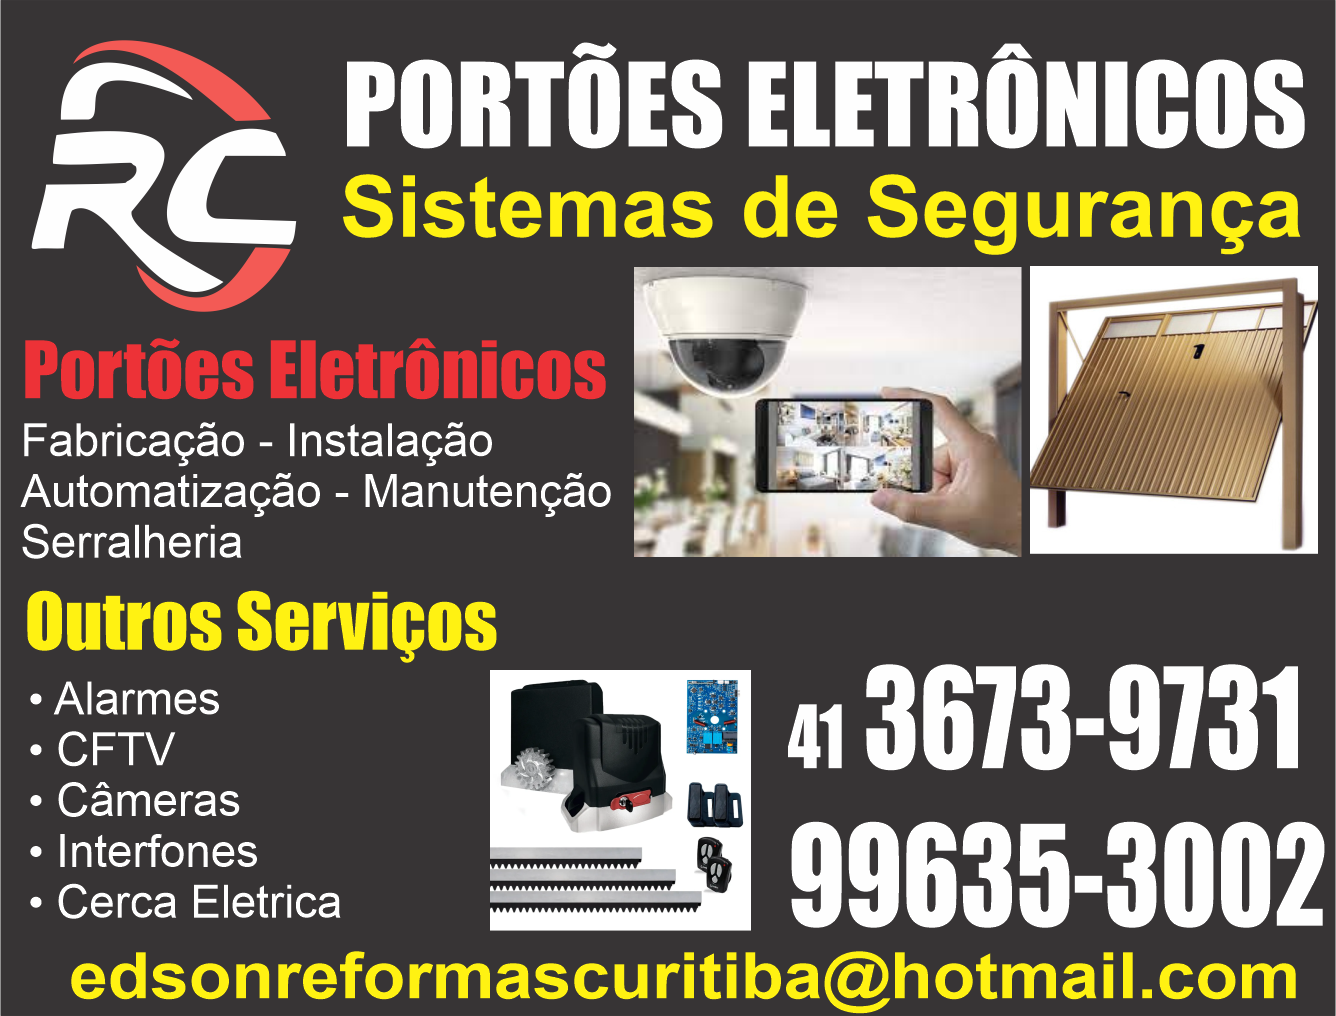 RC Portões Eletrônicos      Fones: (41)3673-9731 / (41) 99635-3002